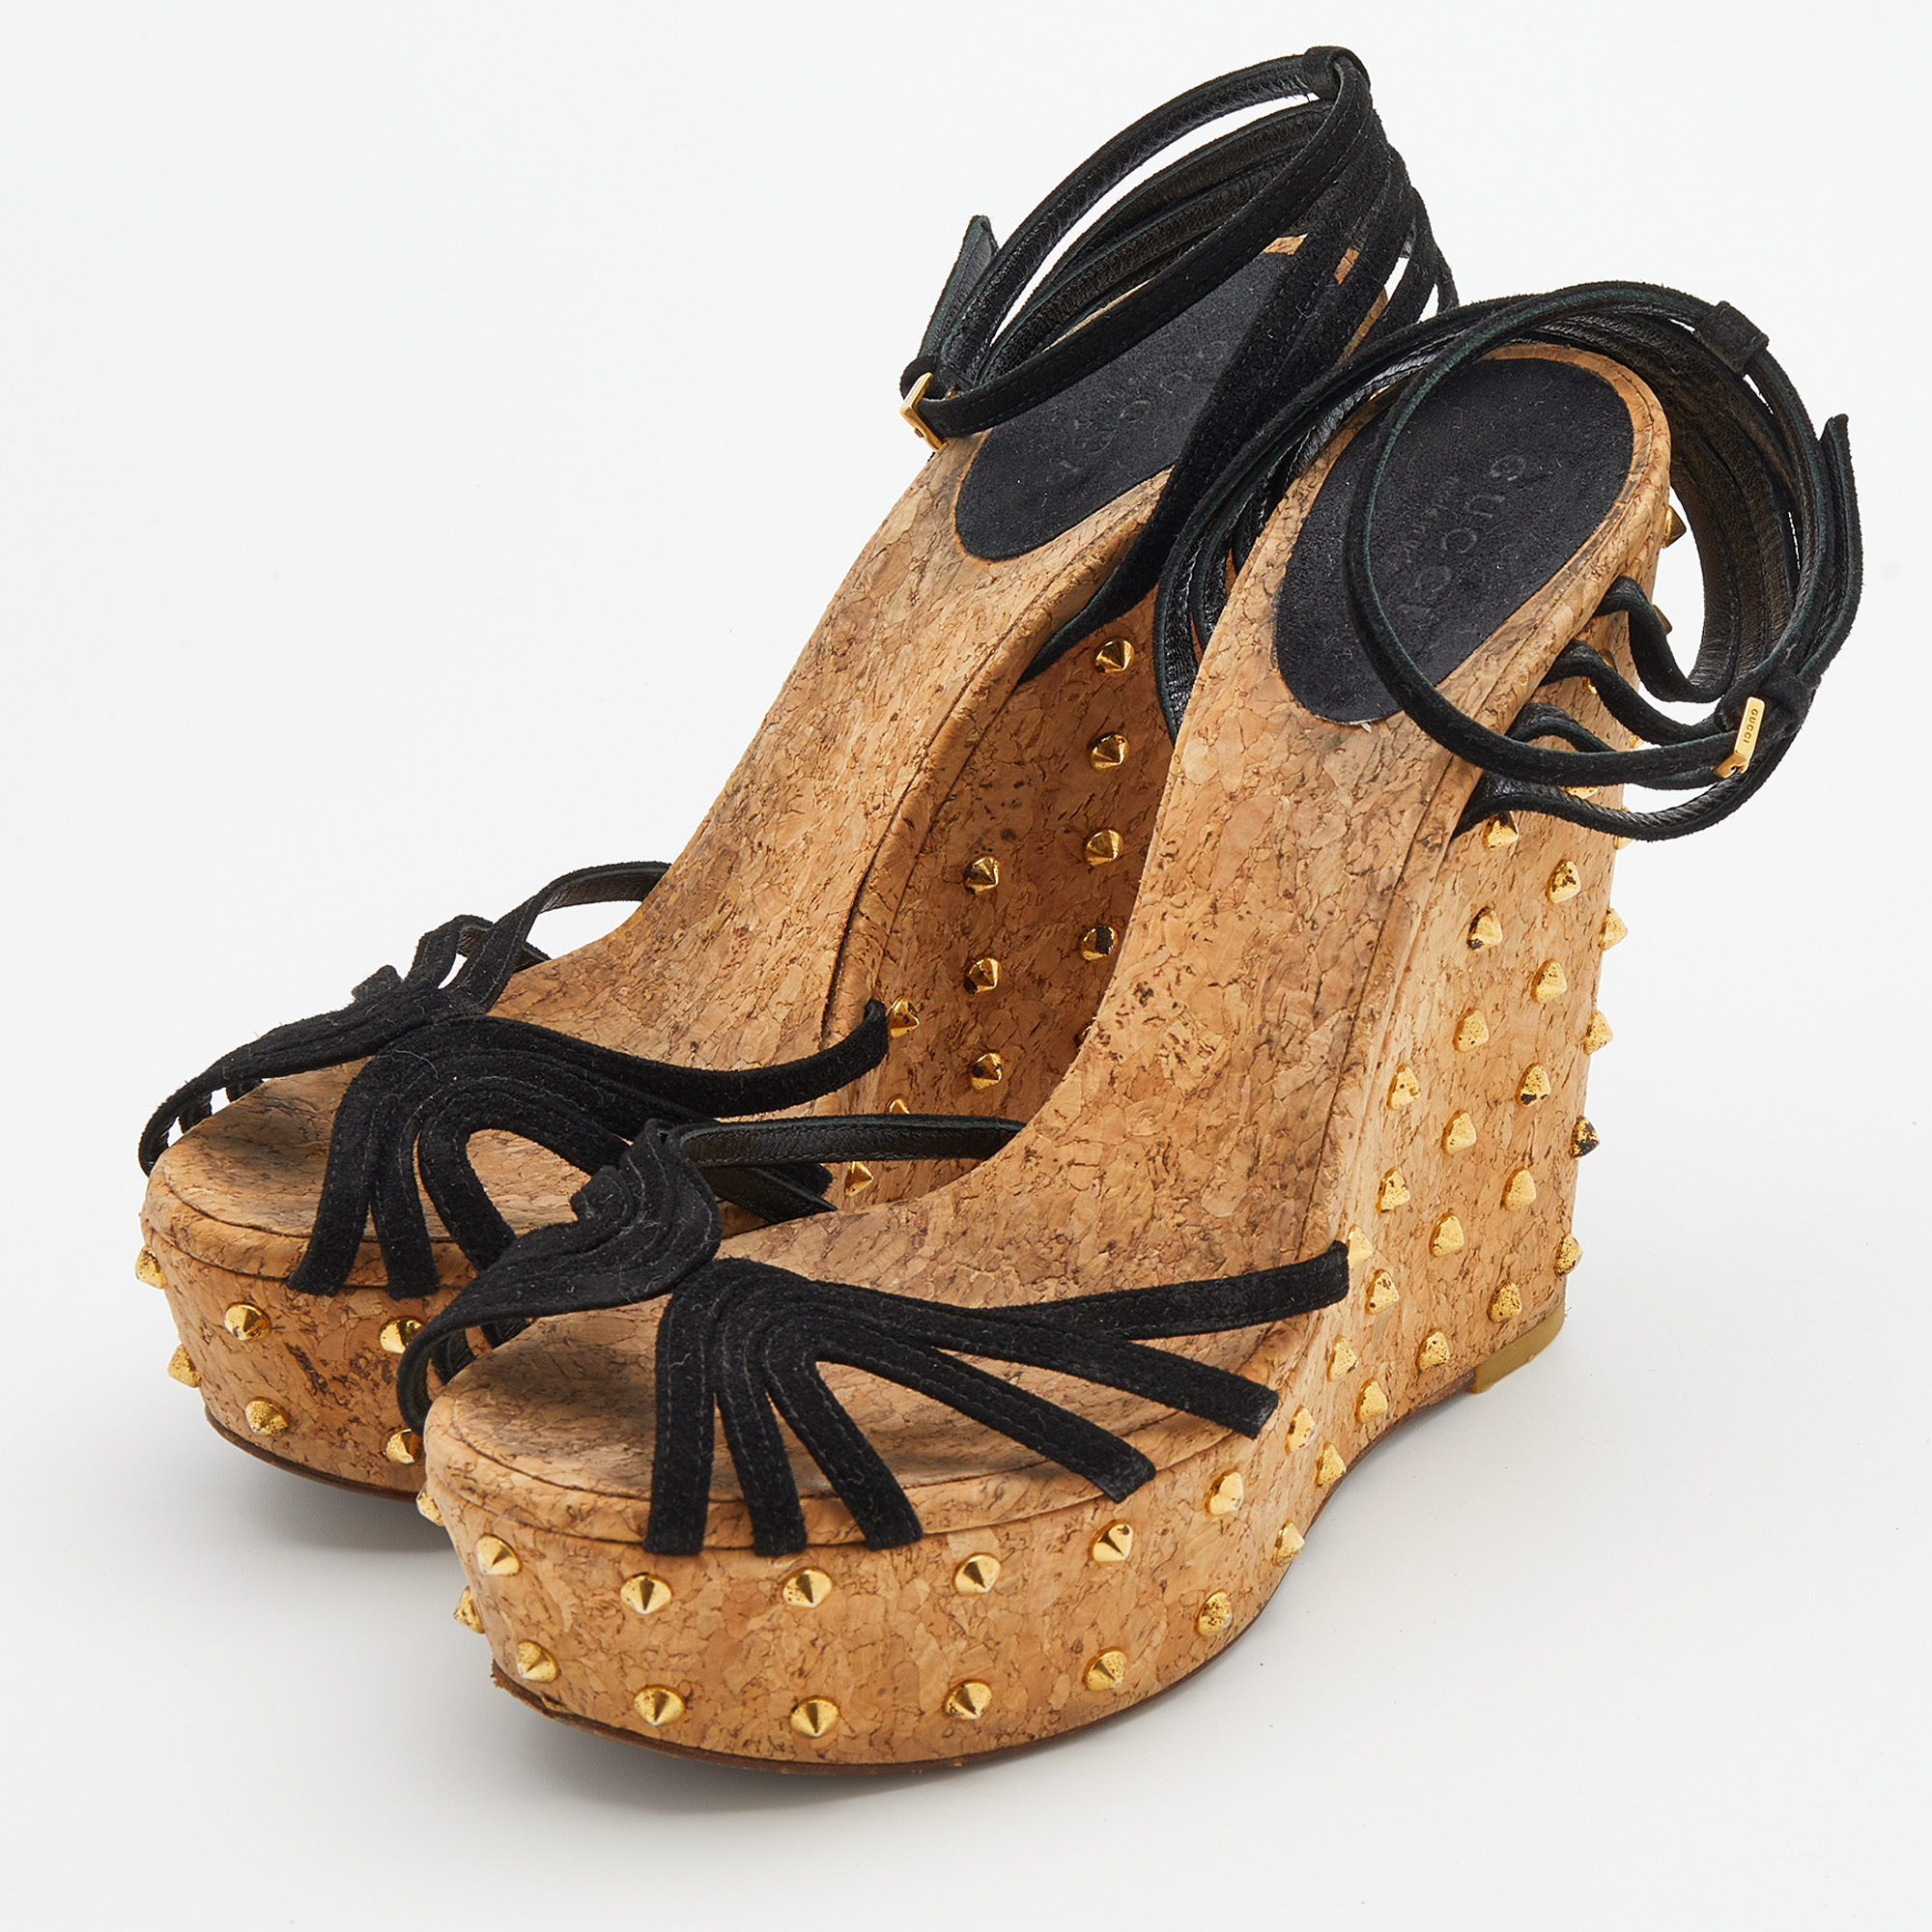 

Gucci Black Suede Studded Cork Wedge Platform Ankle Strap Sandals Size